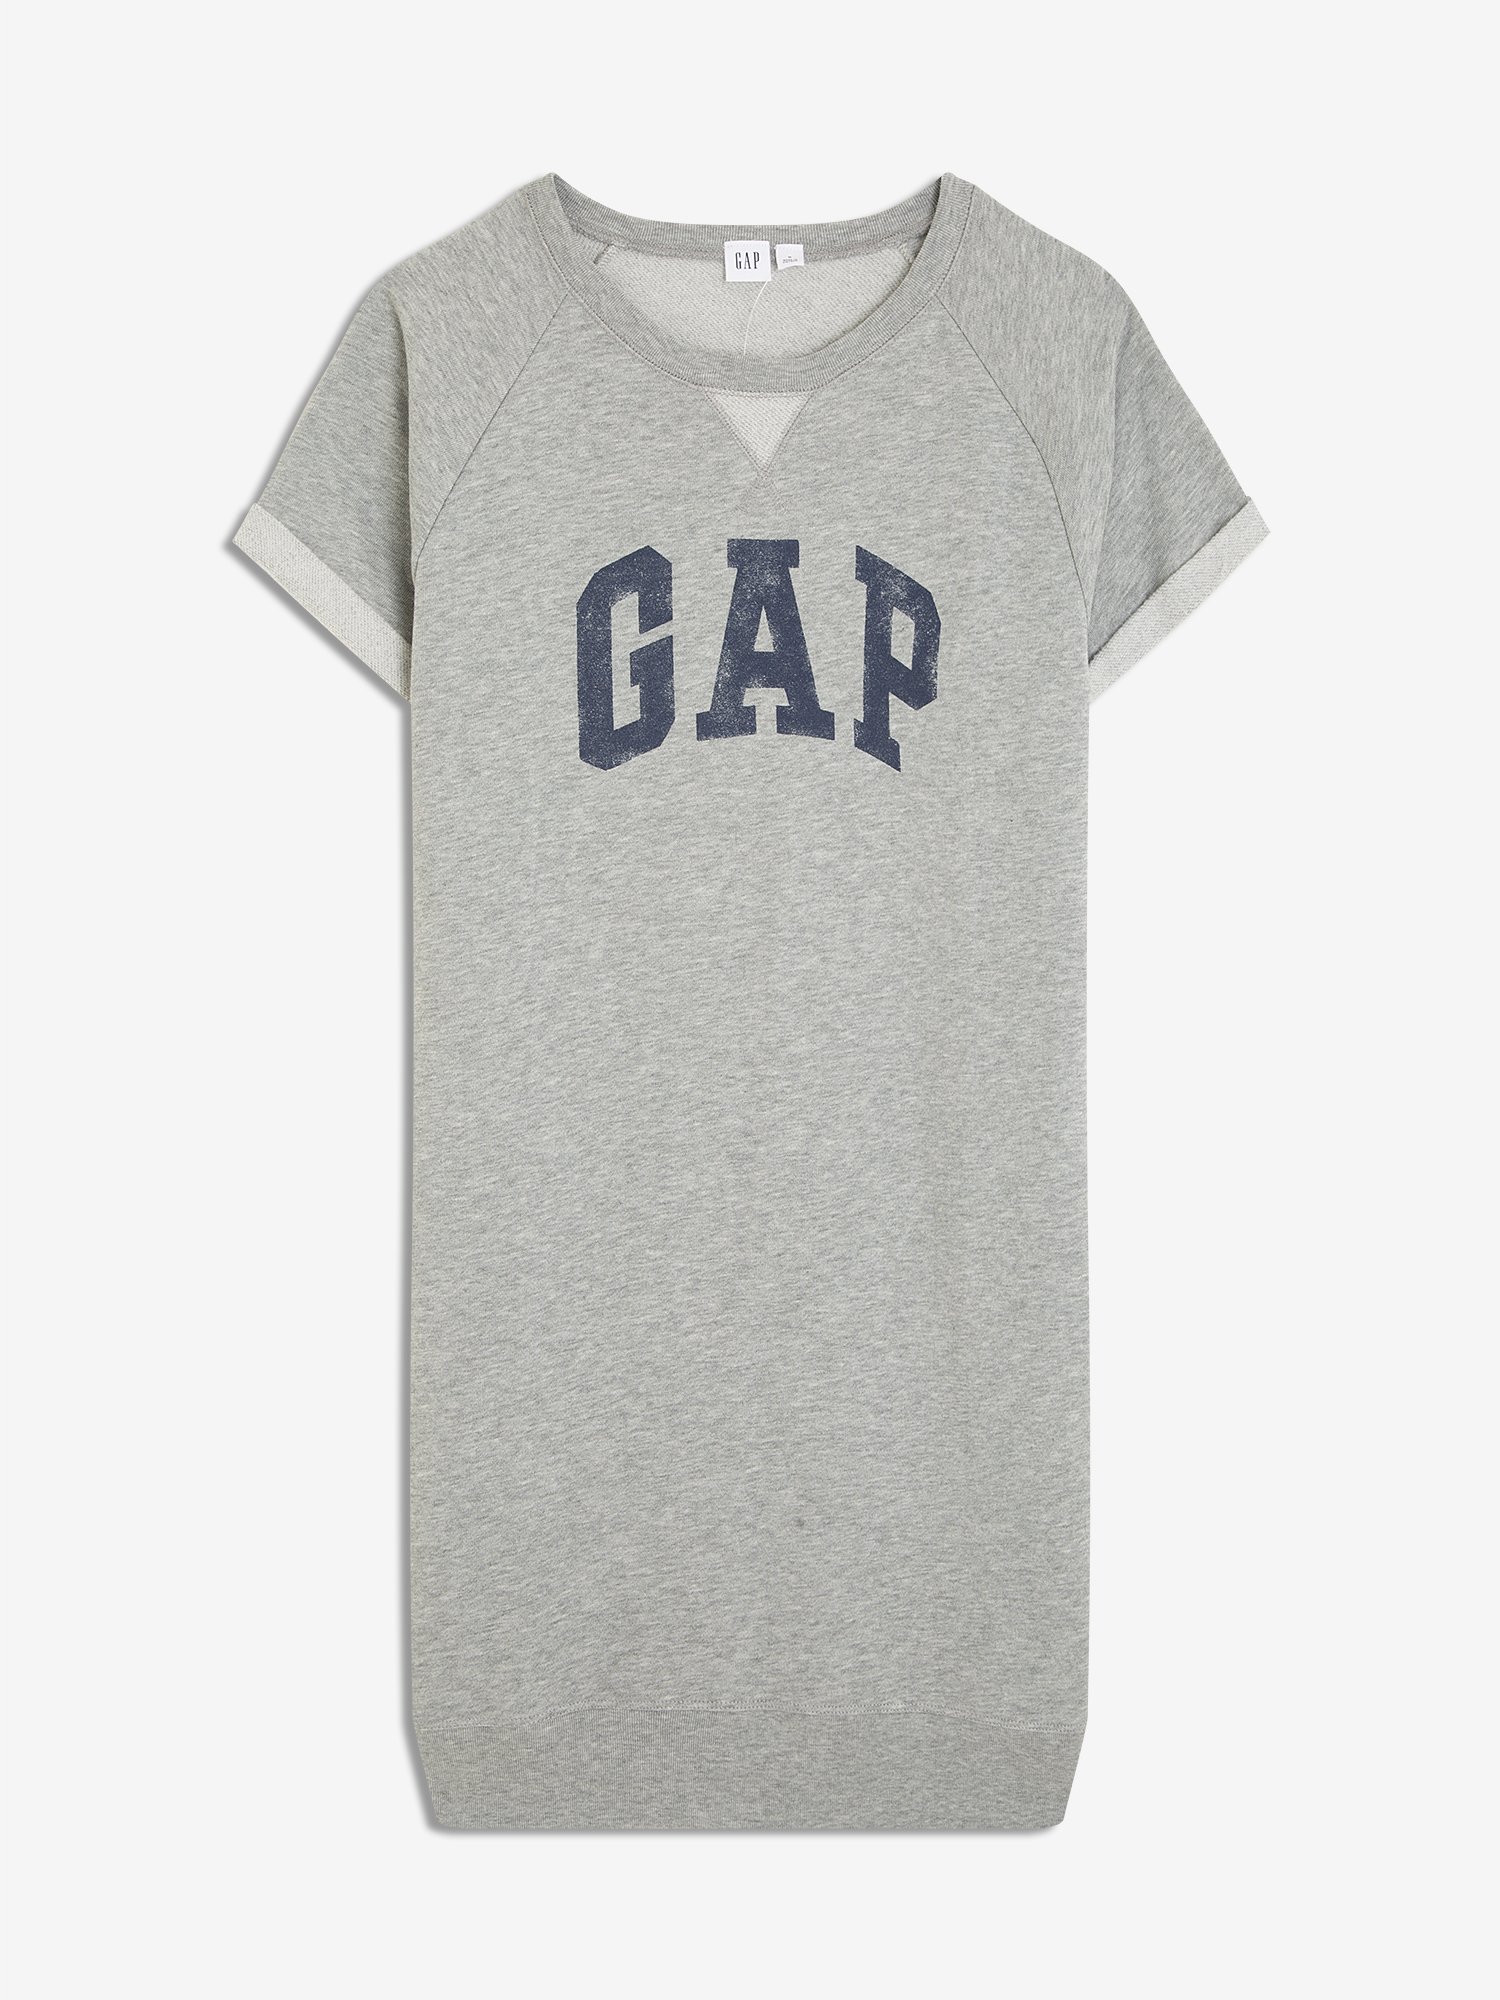 Kadın Gap Logo Kısa Kollu Elbise product image